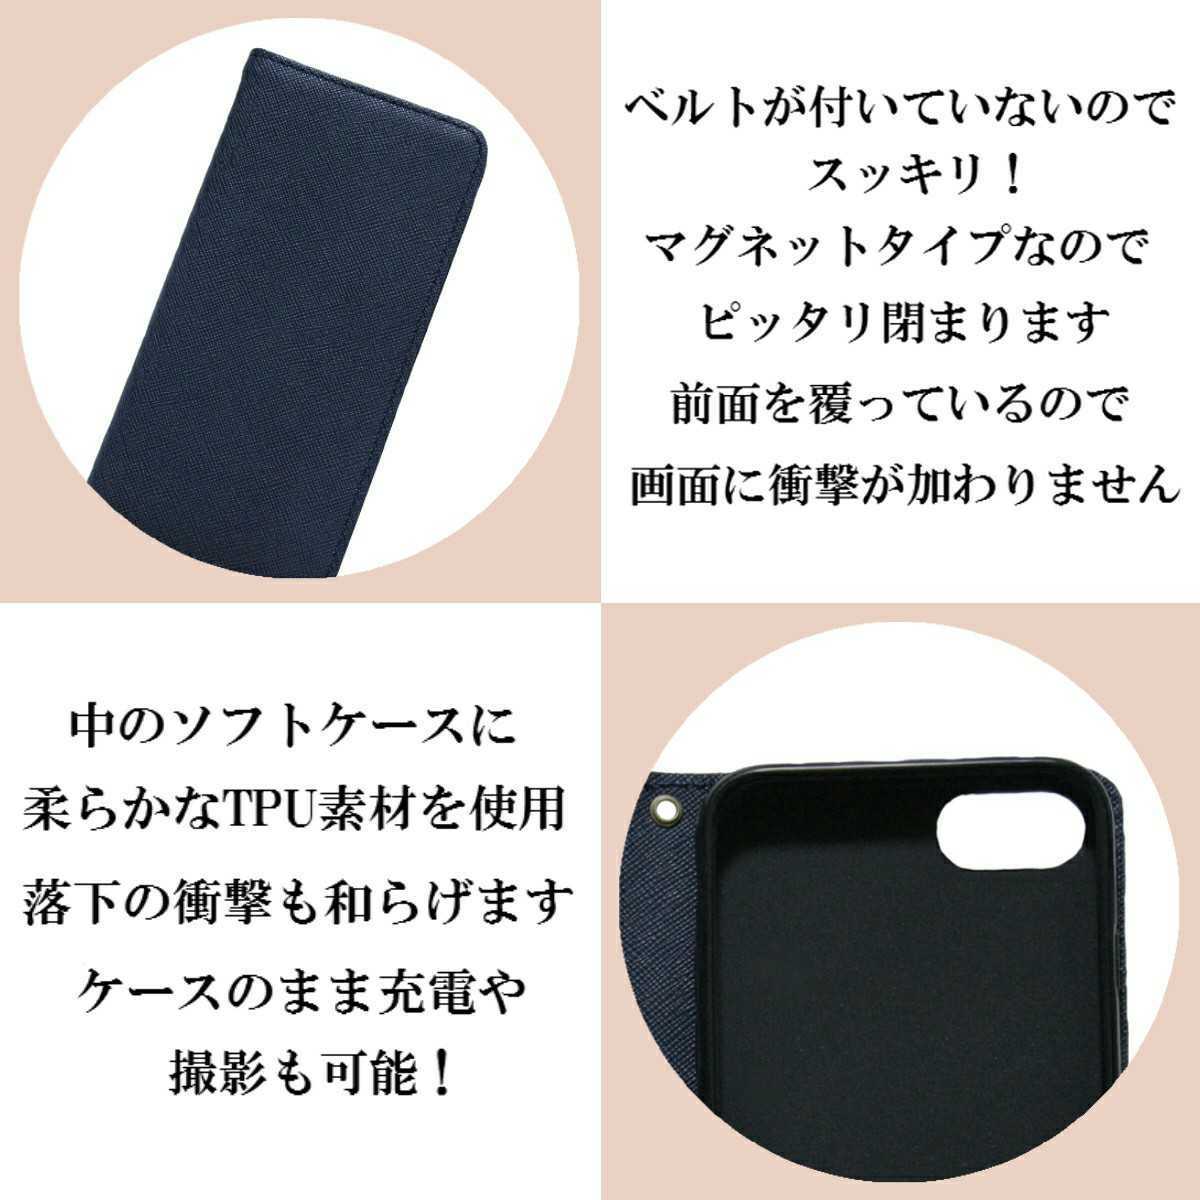 【新品】PUレザー手帳型スマホケース(iPhone X 対応)ブラック